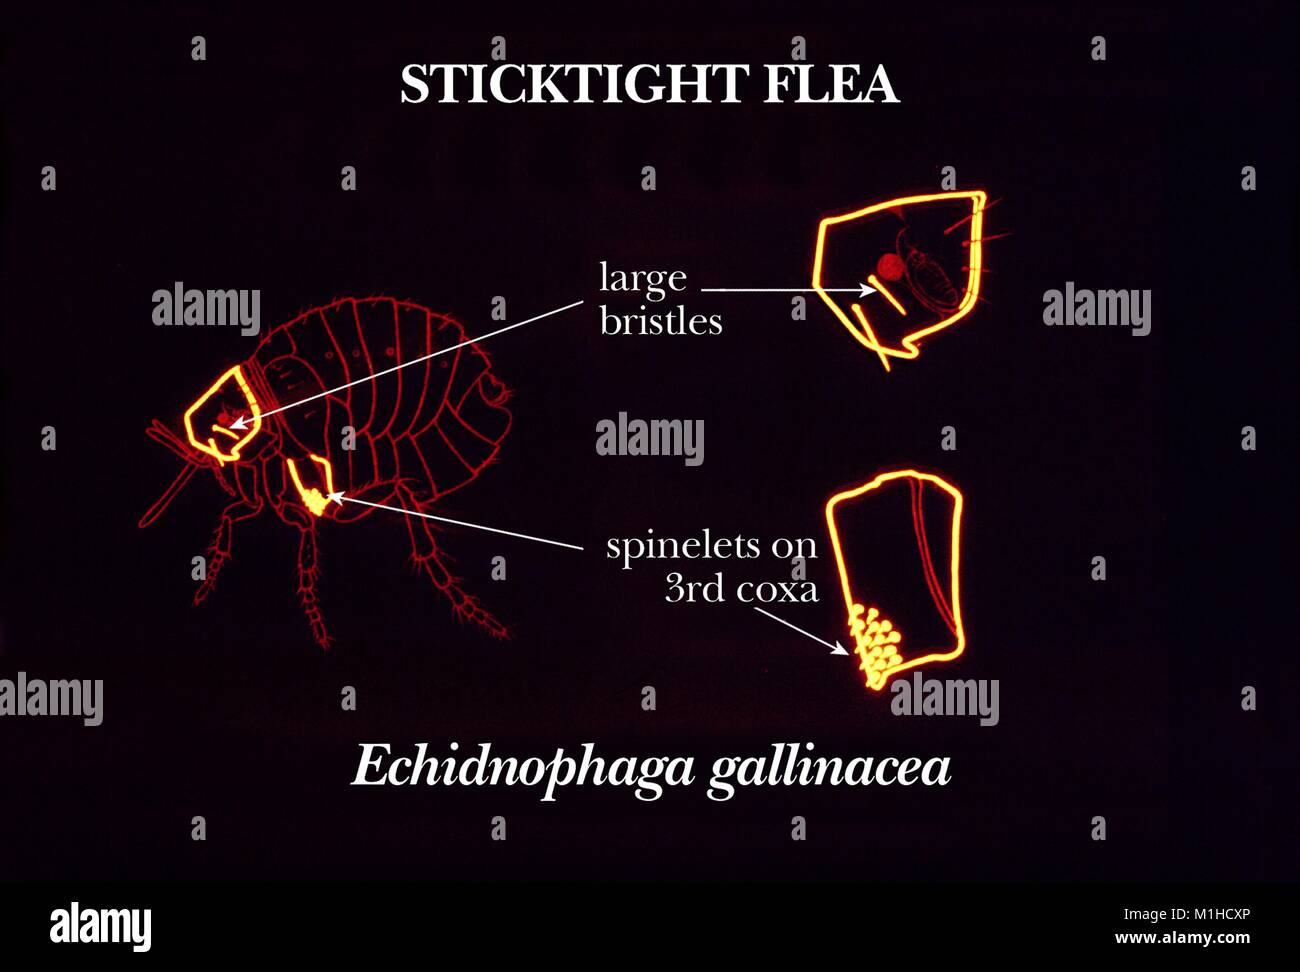 Illustrazione della sticktight flea (Echidnophaga gallinacea) e la sua identificazione di caratteristiche morfologiche, il gran capo delle setole e la spinelets sul terzo coxa toracica, 1976. Immagine cortesia CDC. () Foto Stock